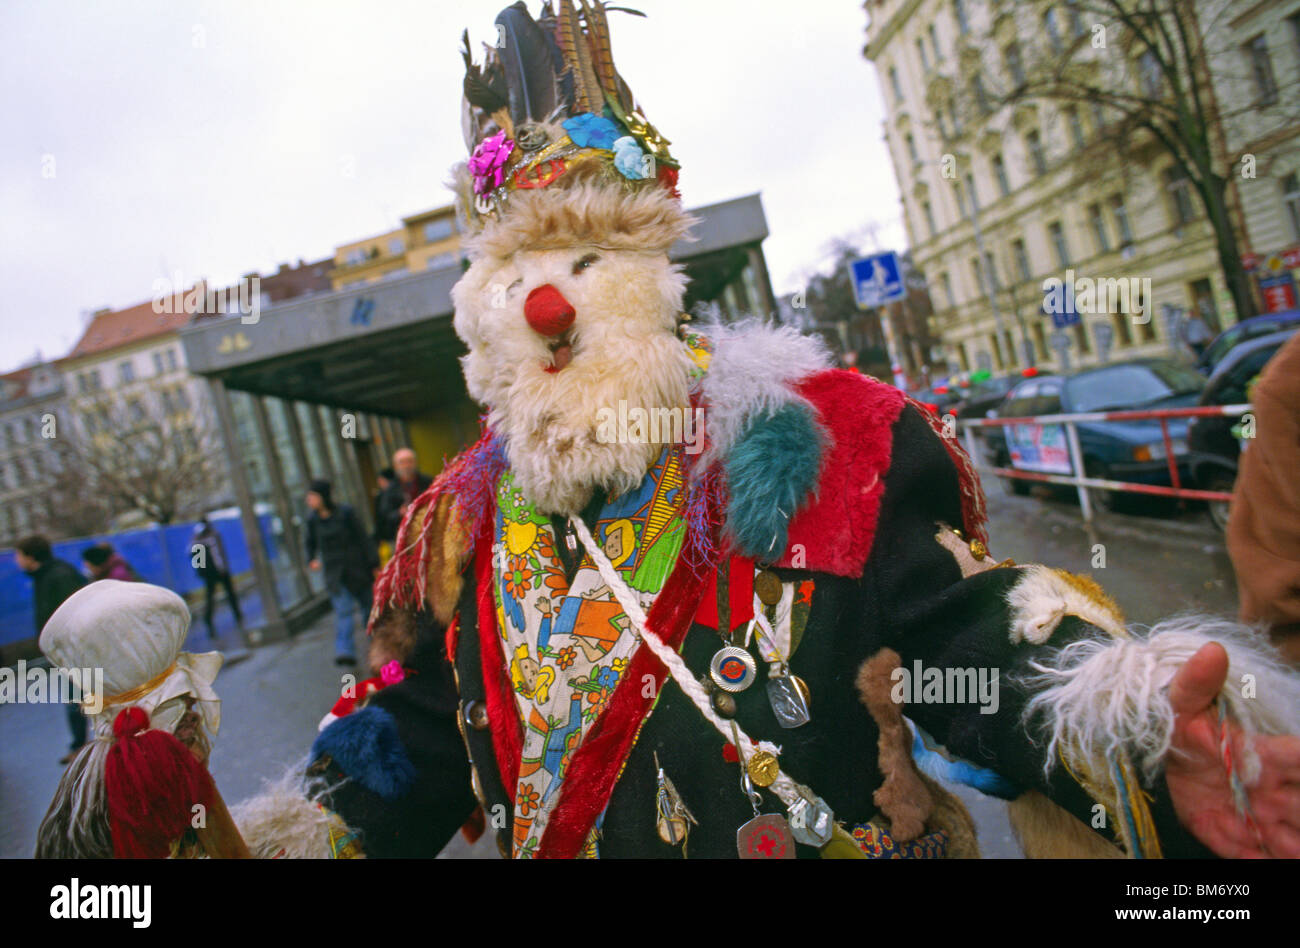 Le carnaval traditionnel (République tchèque : masopust) défilé dans le quartier Zizkov commence sur place Jiriho z Podebrad sur 5 Februa Banque D'Images